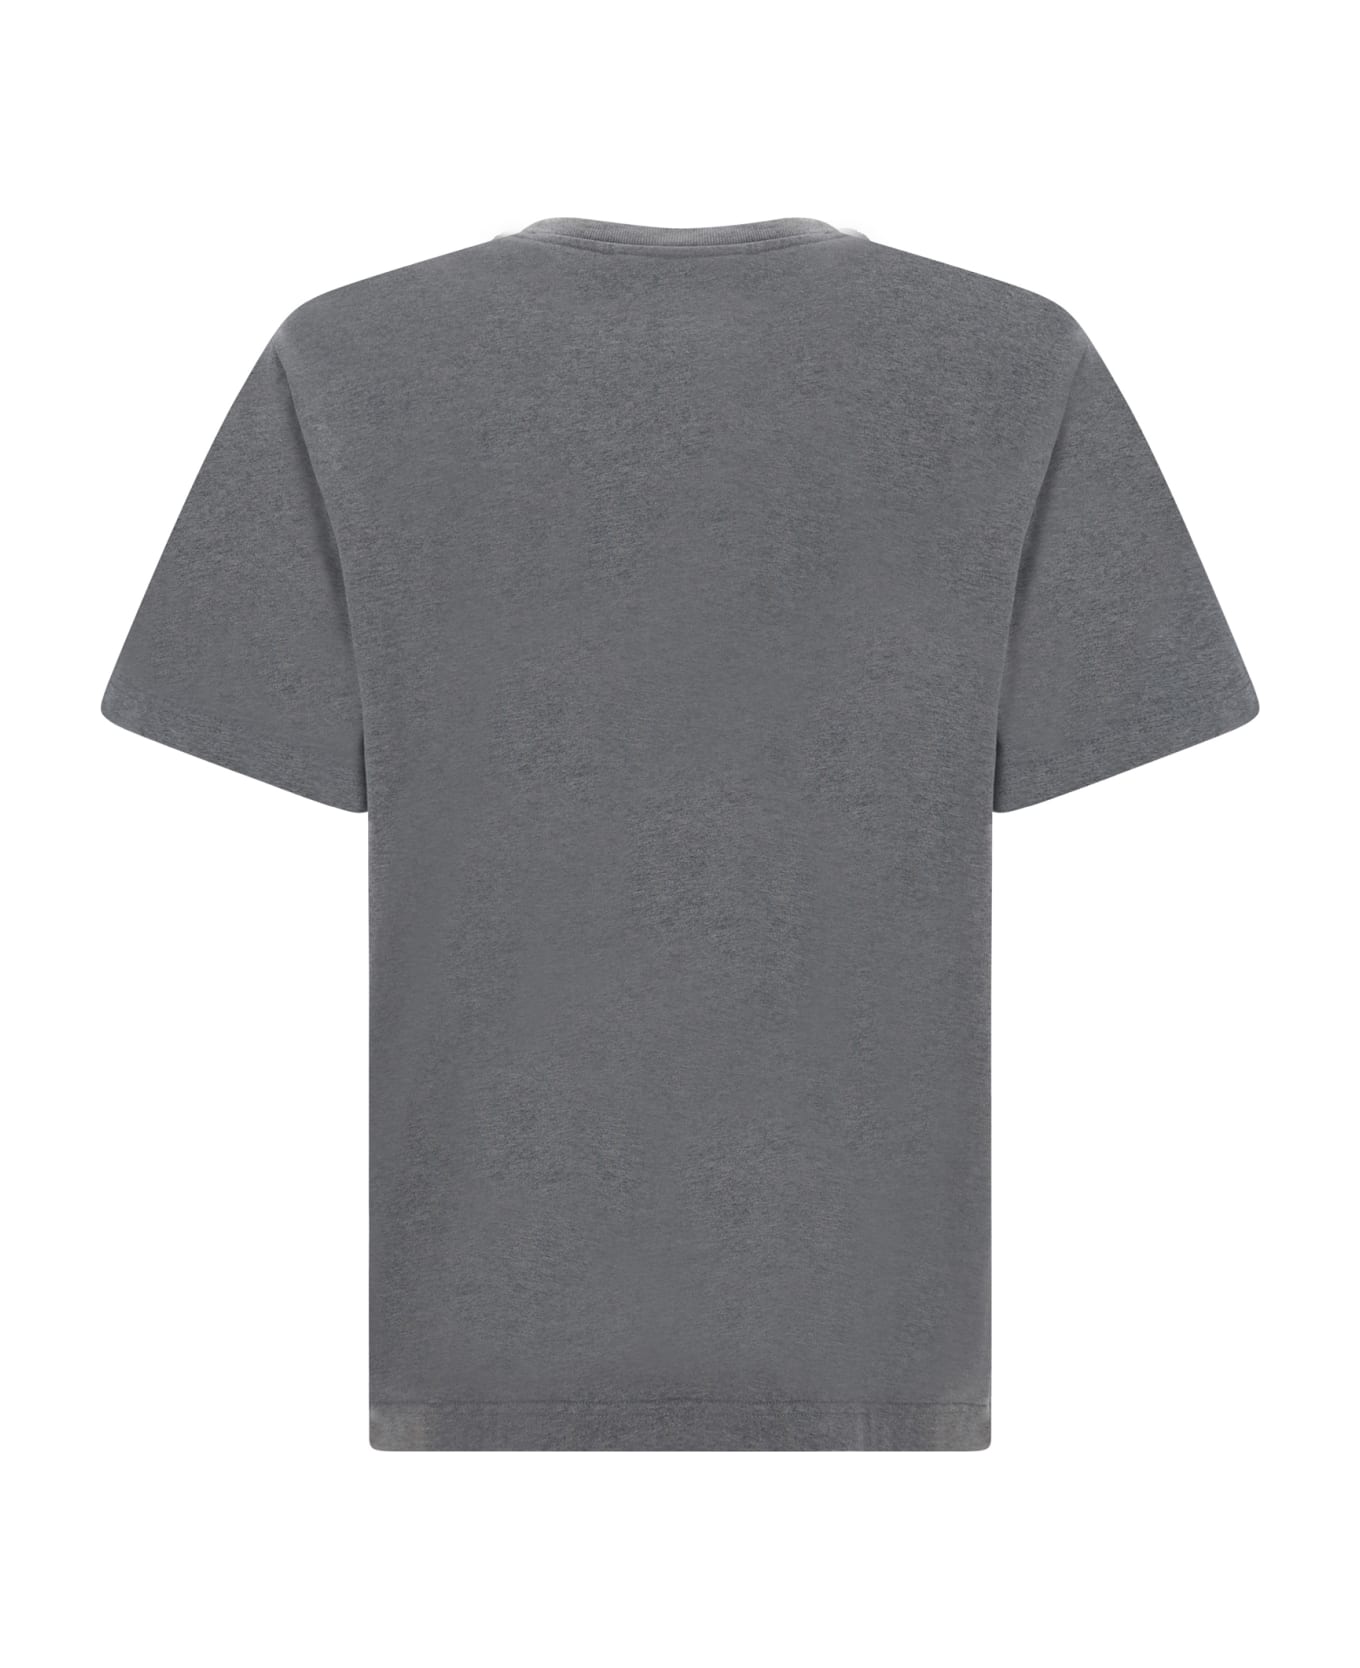 Maison Kitsuné T-shirt - Medium Grey Melange